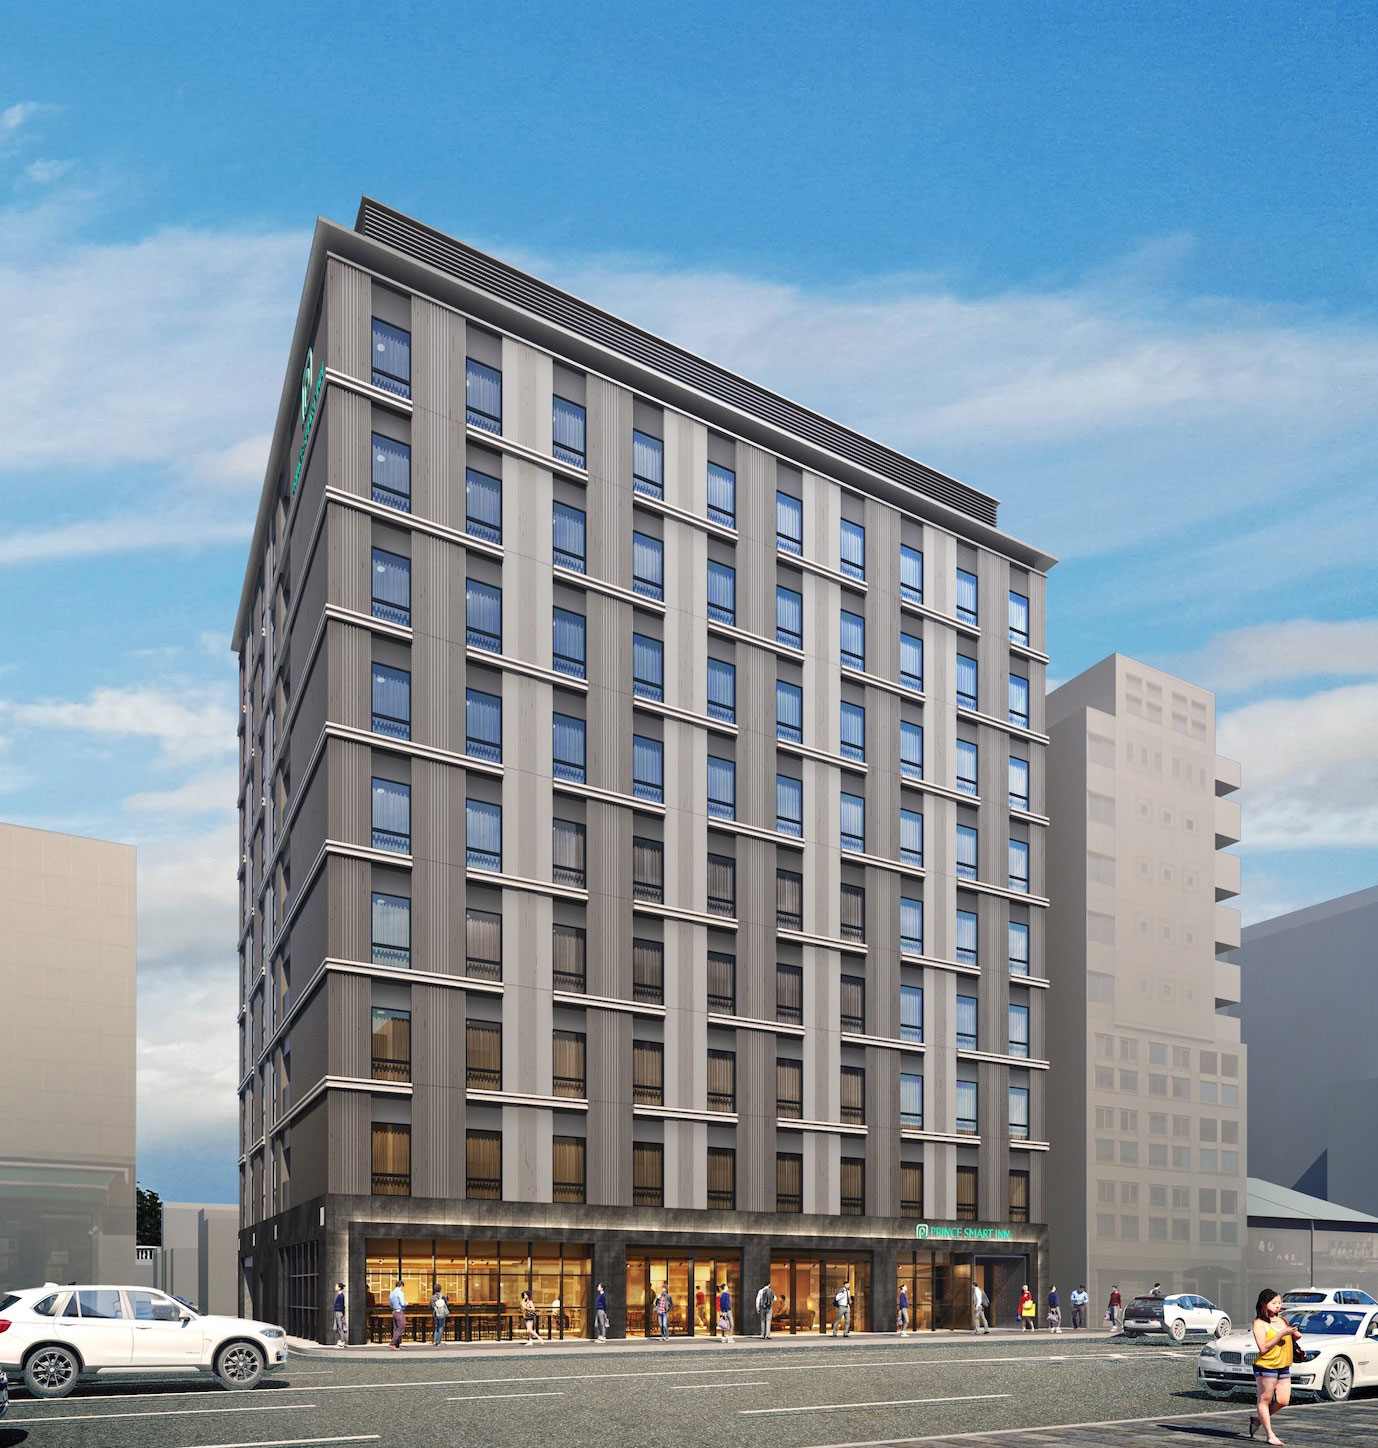 プリンスホテル 「プリンス スマート イン 京都四条大宮」 2021年夏、開業予定